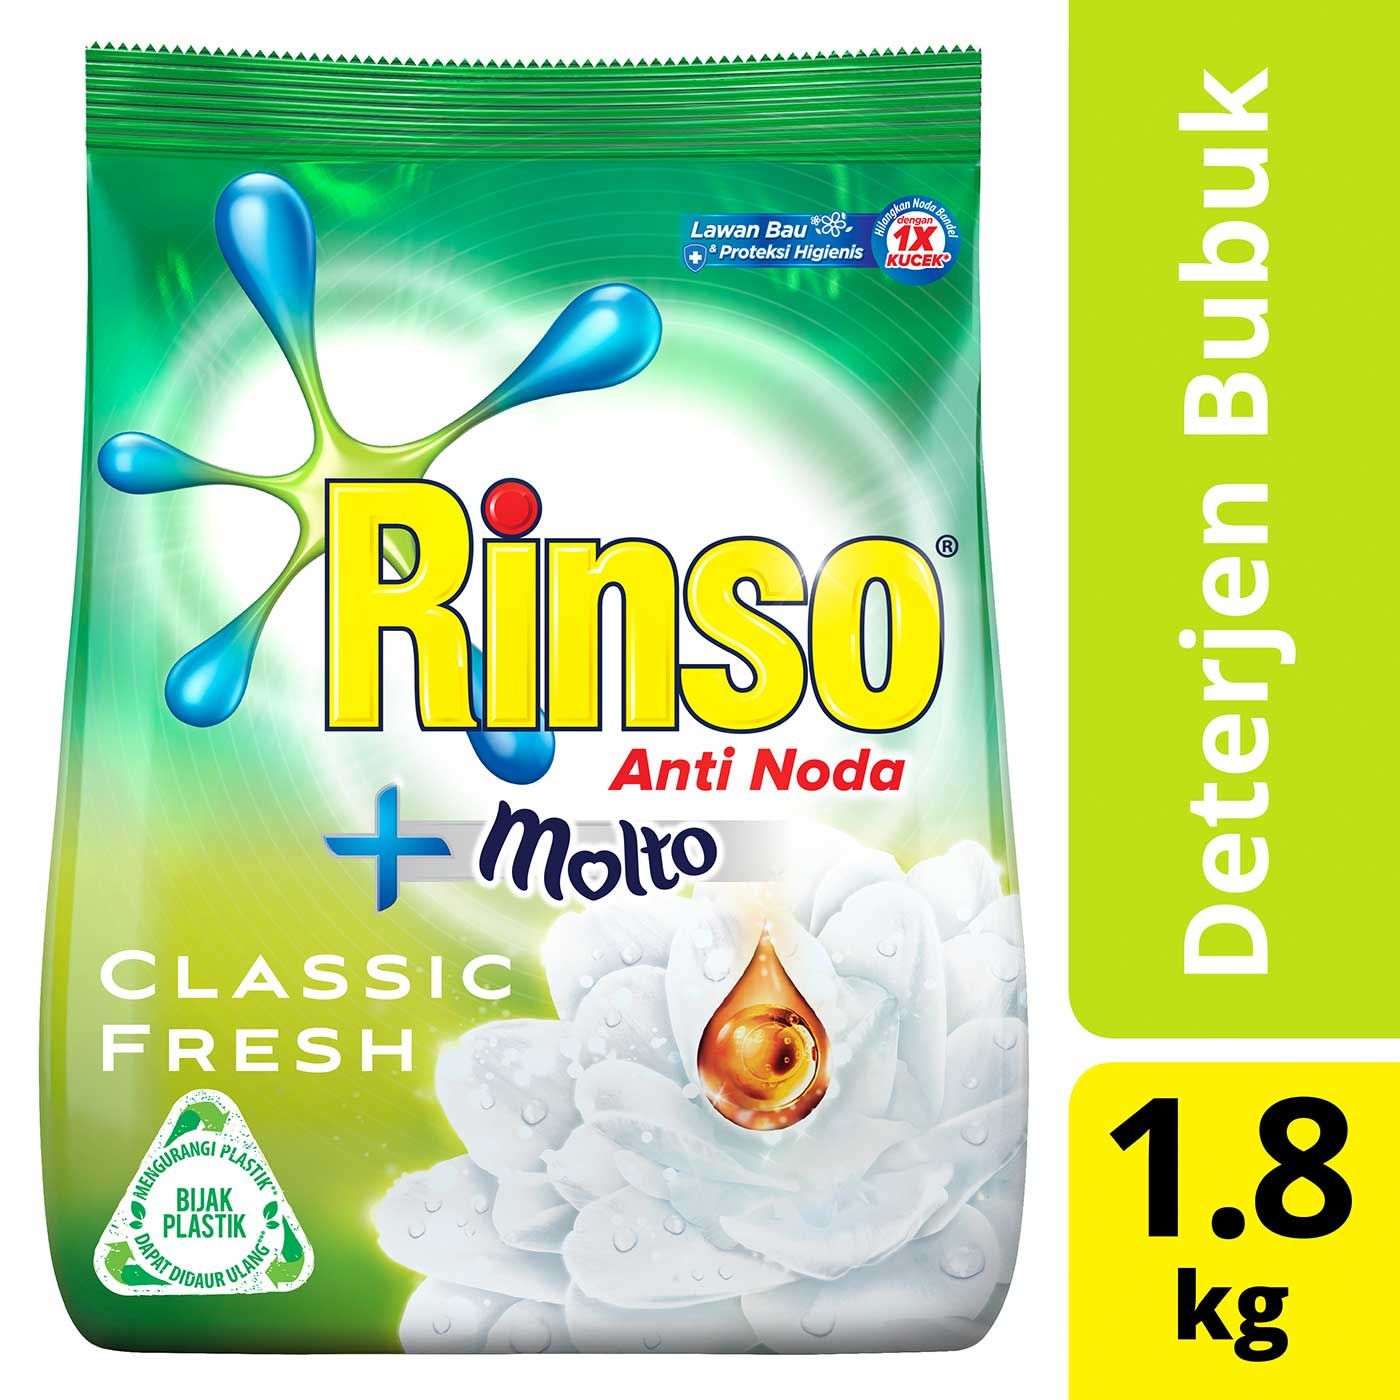 Rinso Detergent Anti Noda (1.8kg) - 2